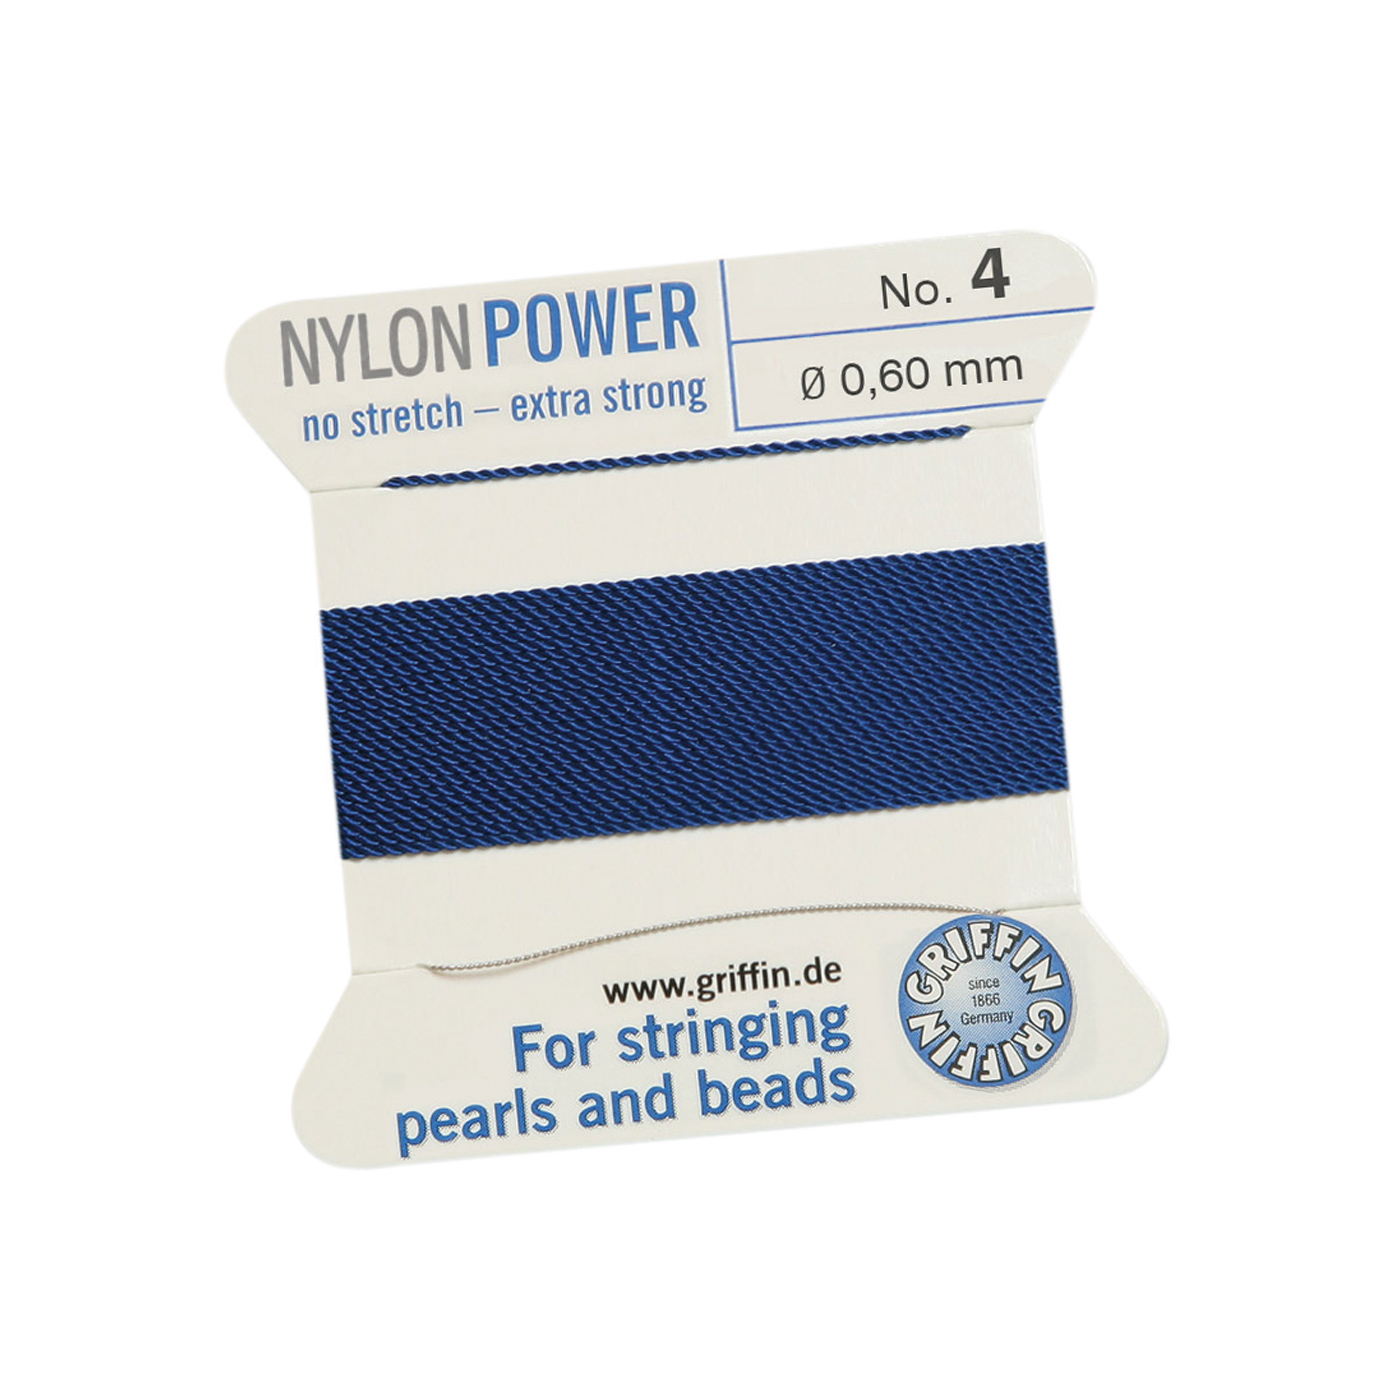 Bead Cord NylonPower, Dark Blue, No. 4 - 2 m